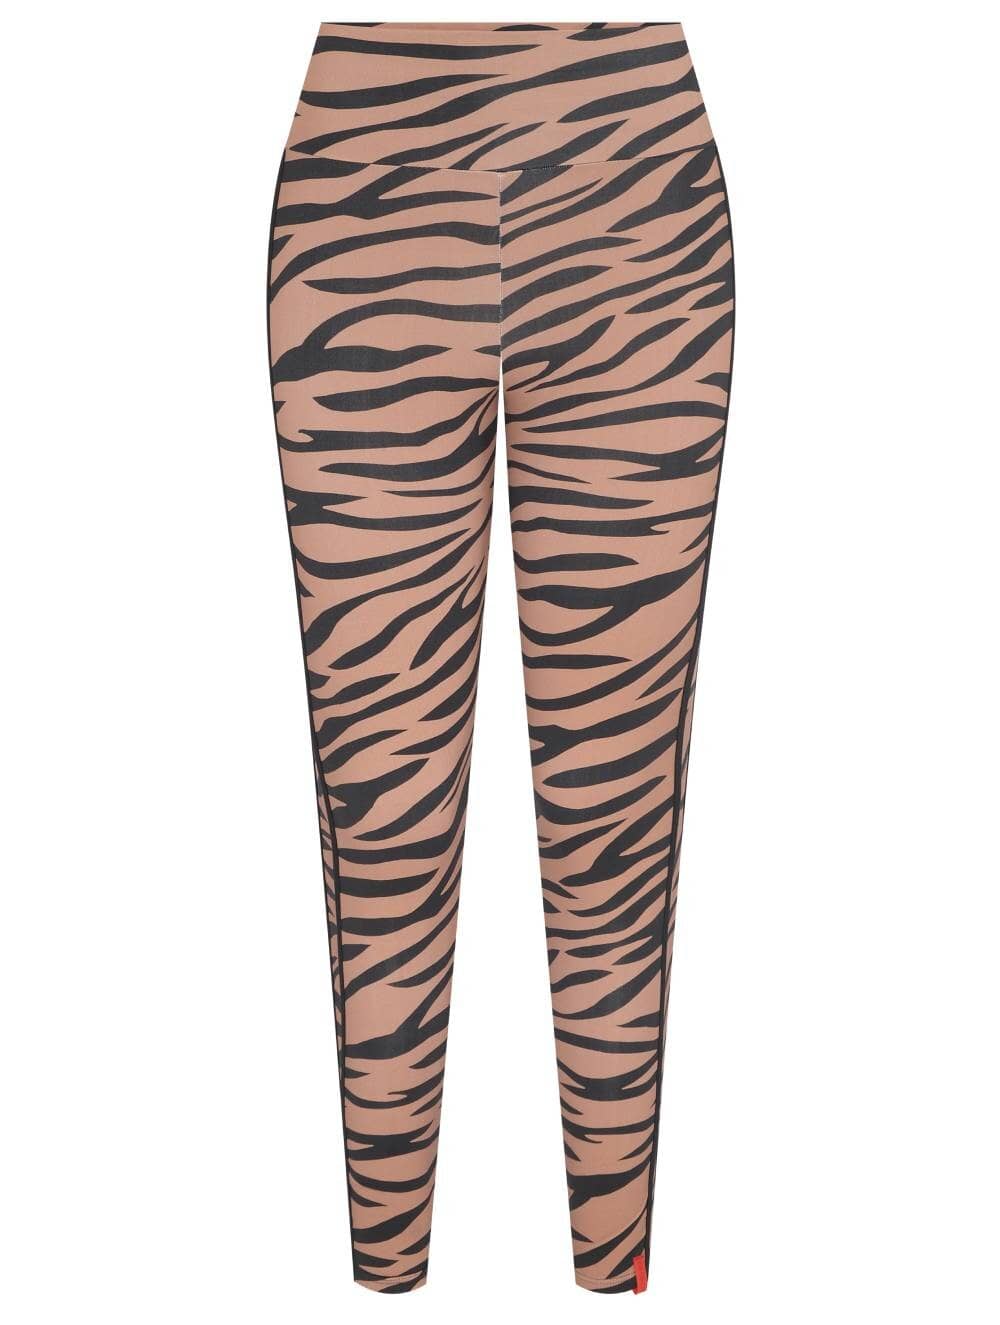 Tiger Printed Leggings